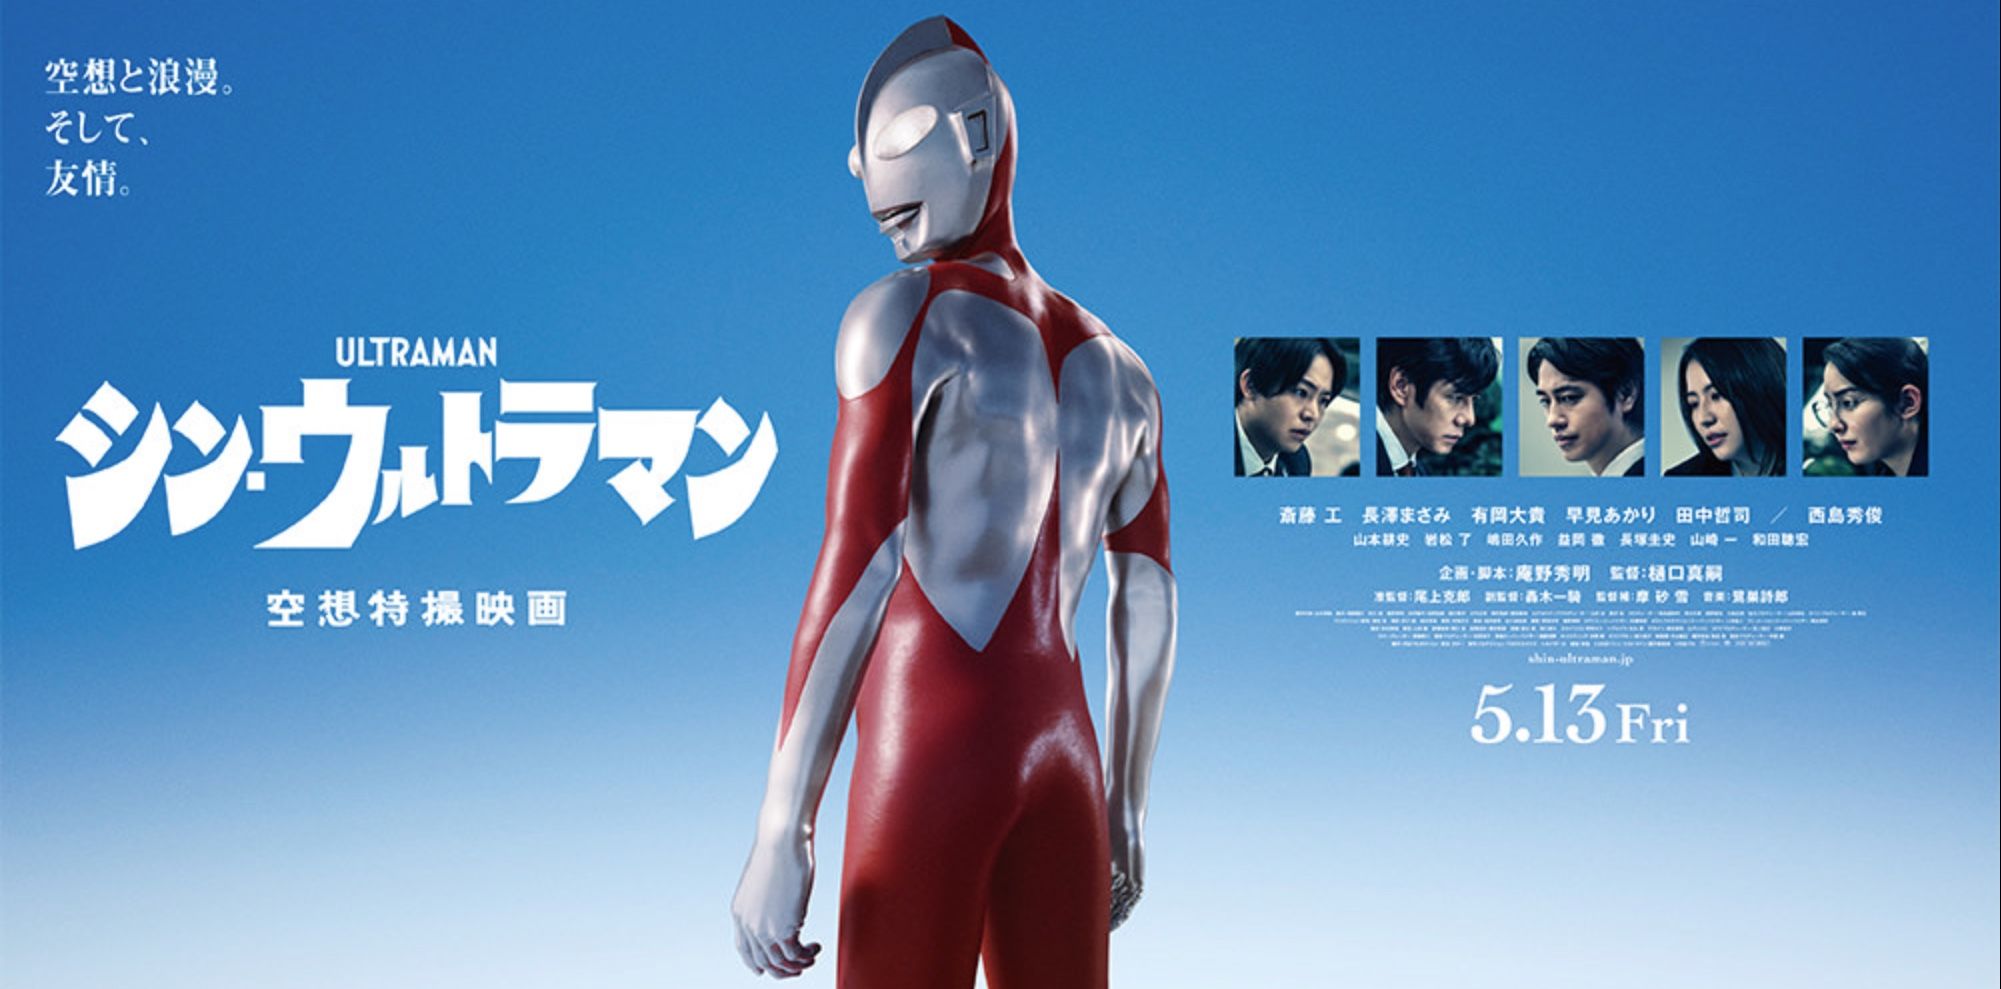 Ultraman Poster 2